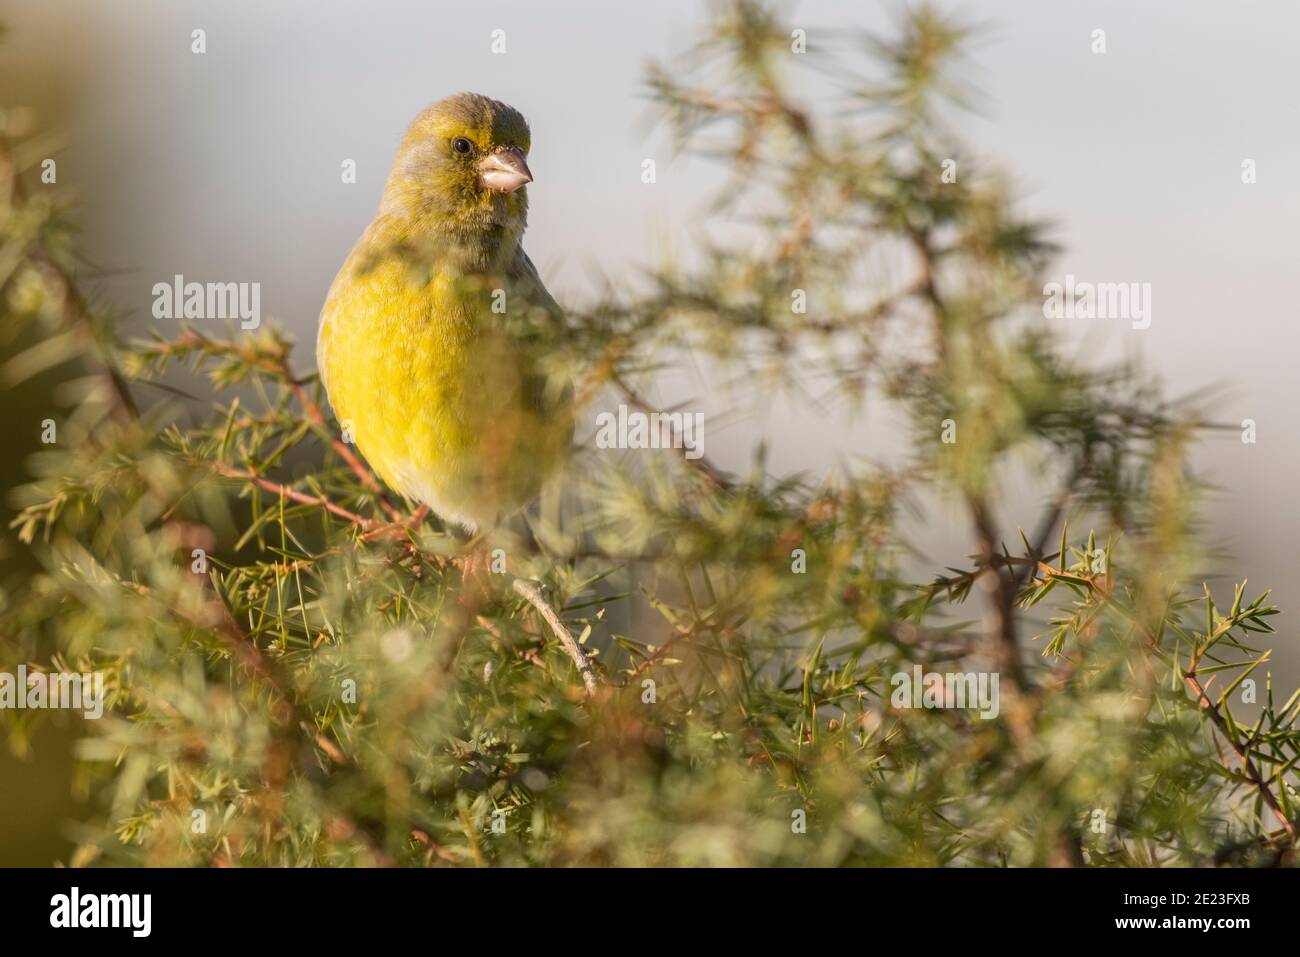 Verdfinch européen Chloris chloris oiseau granivore vert perché dans un arbre Banque D'Images